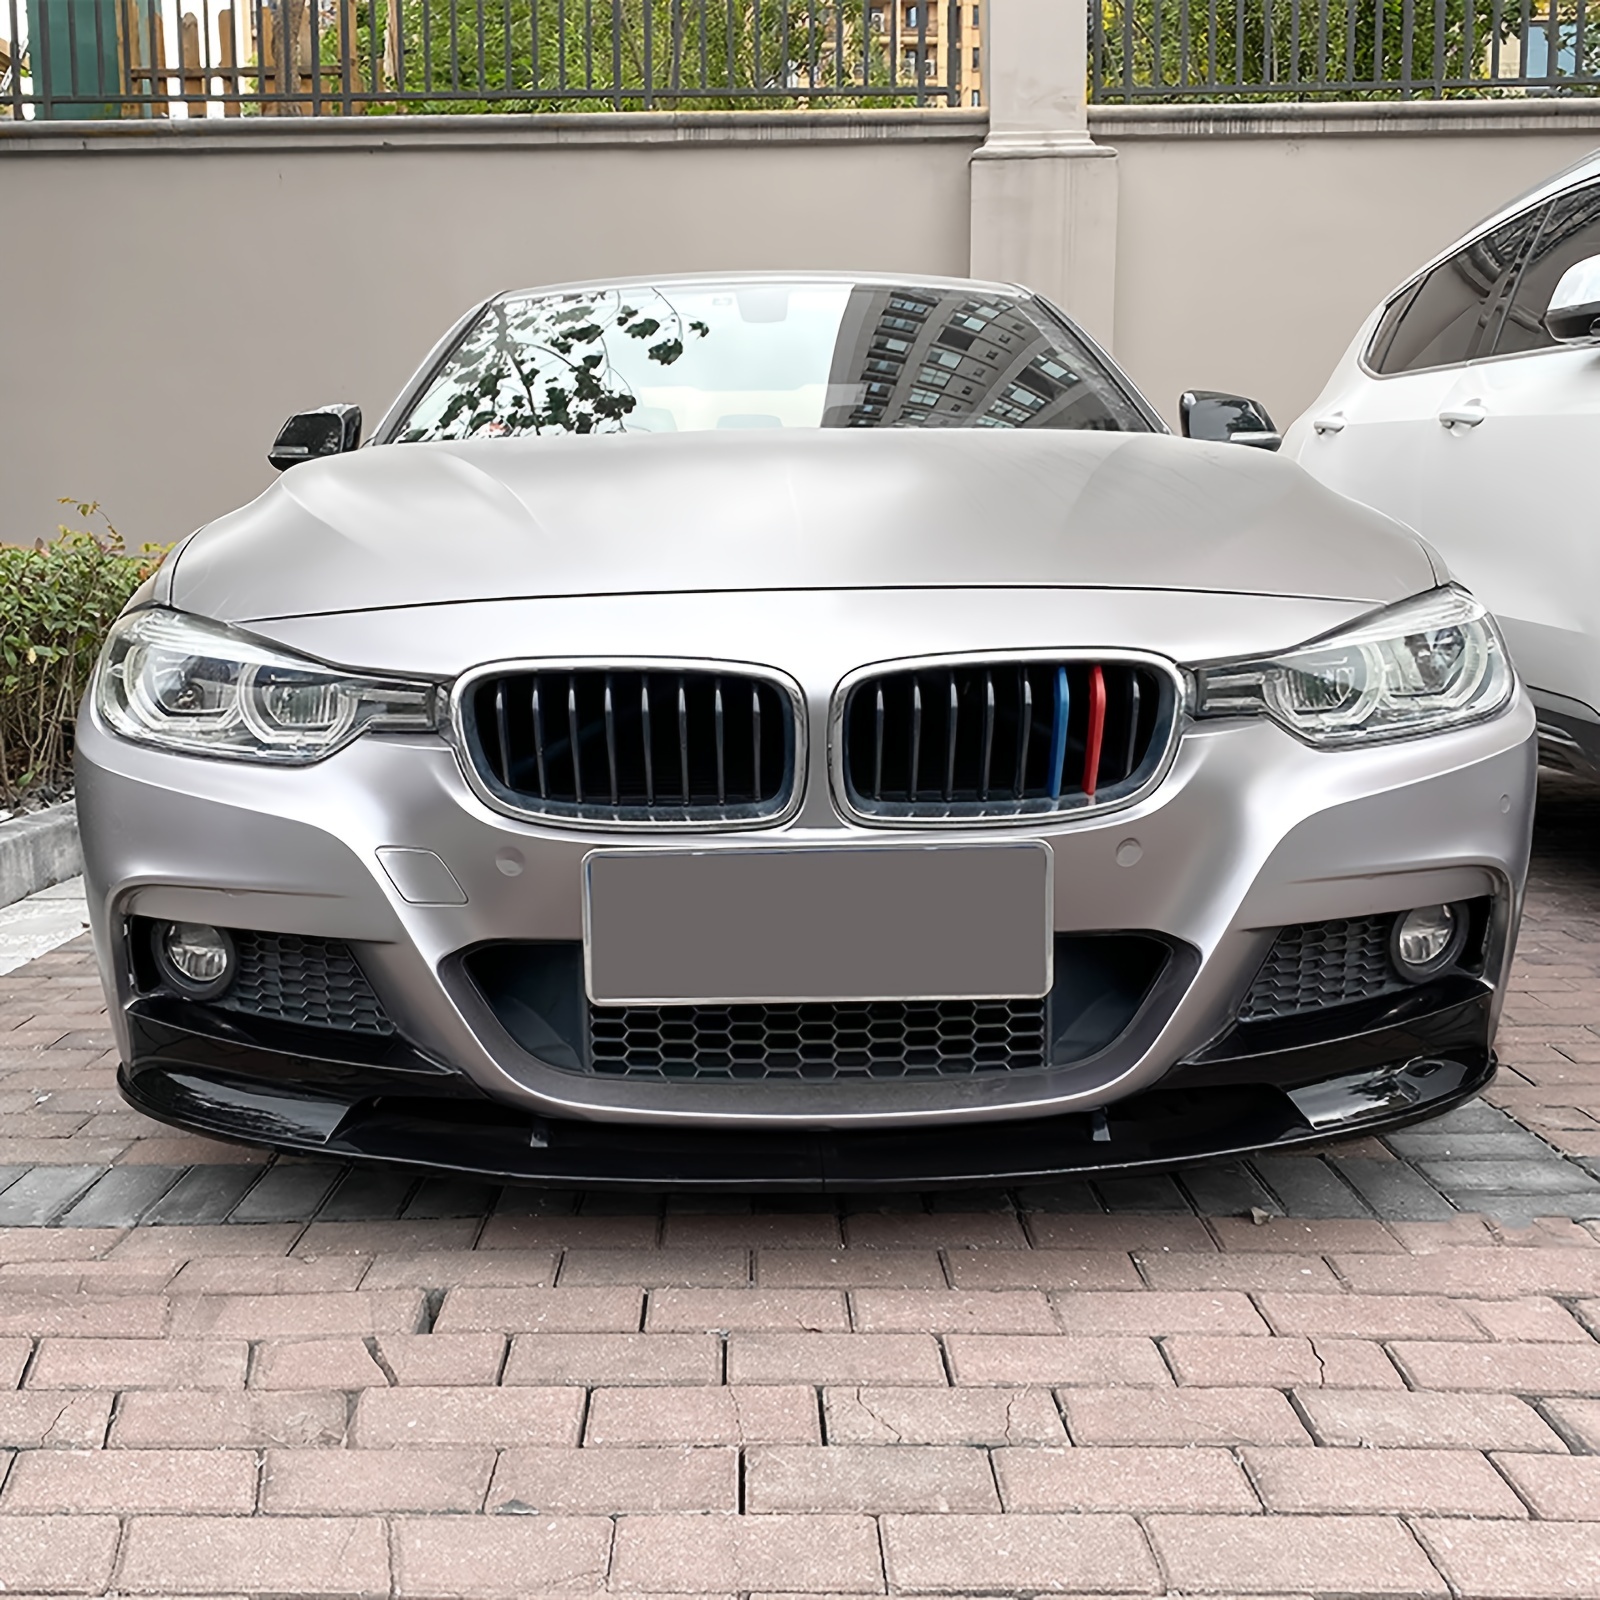 For BMW 3er F30 F31 M-Tech 2013-2019, Front Bumper Spoiler Splitter Lip Car  Lower Body Kit Modification, Carbon Fiber Look / Gloss Black